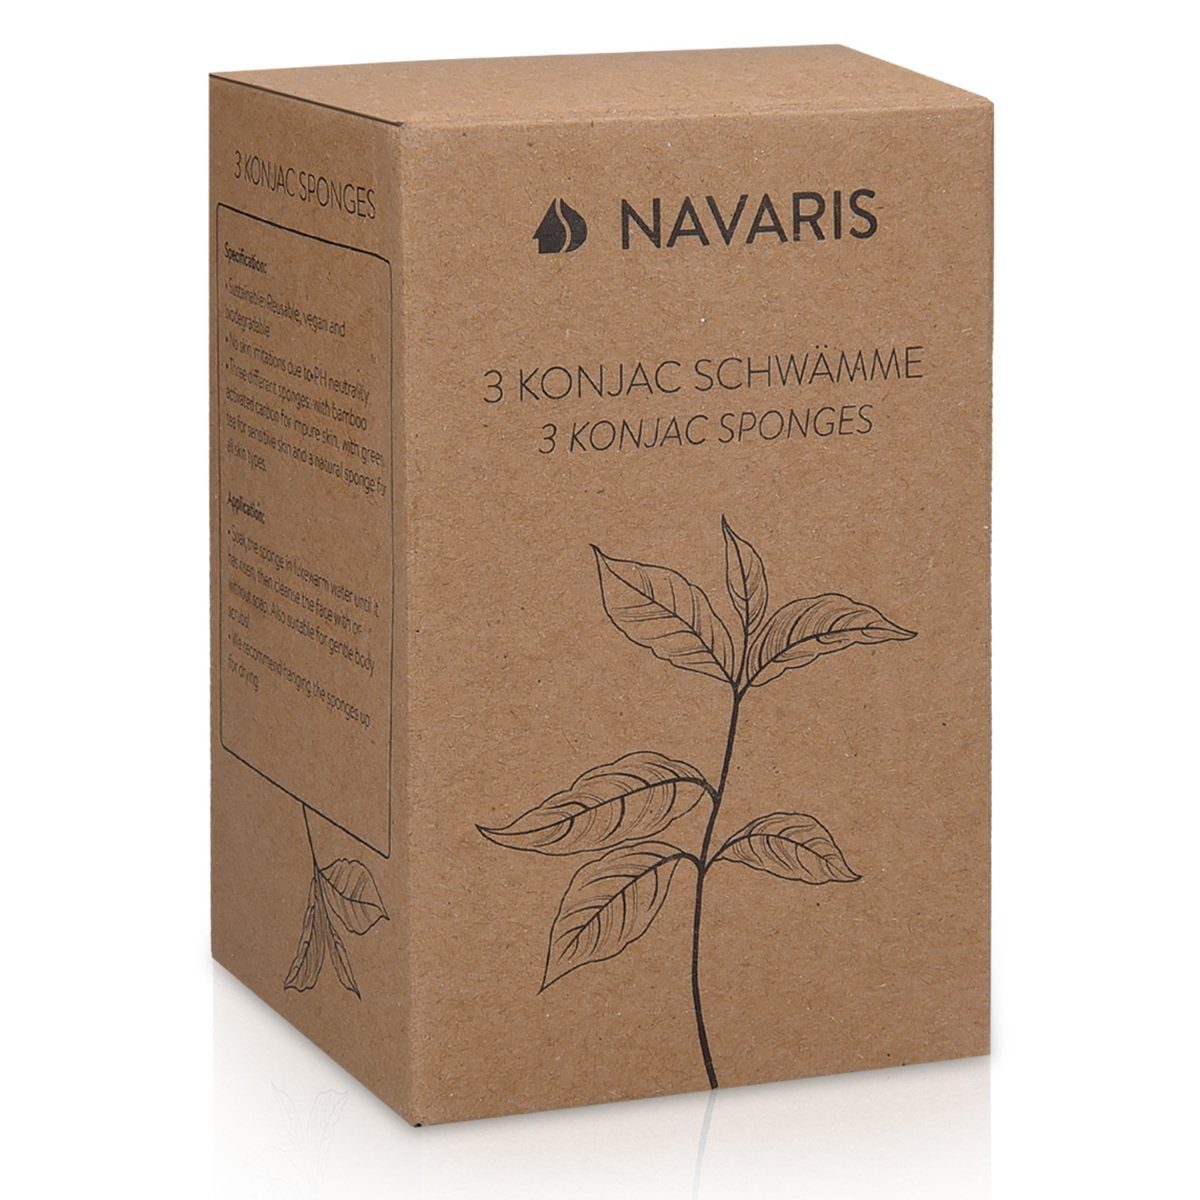 Duschschwamm Navaris 3 Konjac-Gesichtsschwämmen vegan pH-neutral aus Set - und